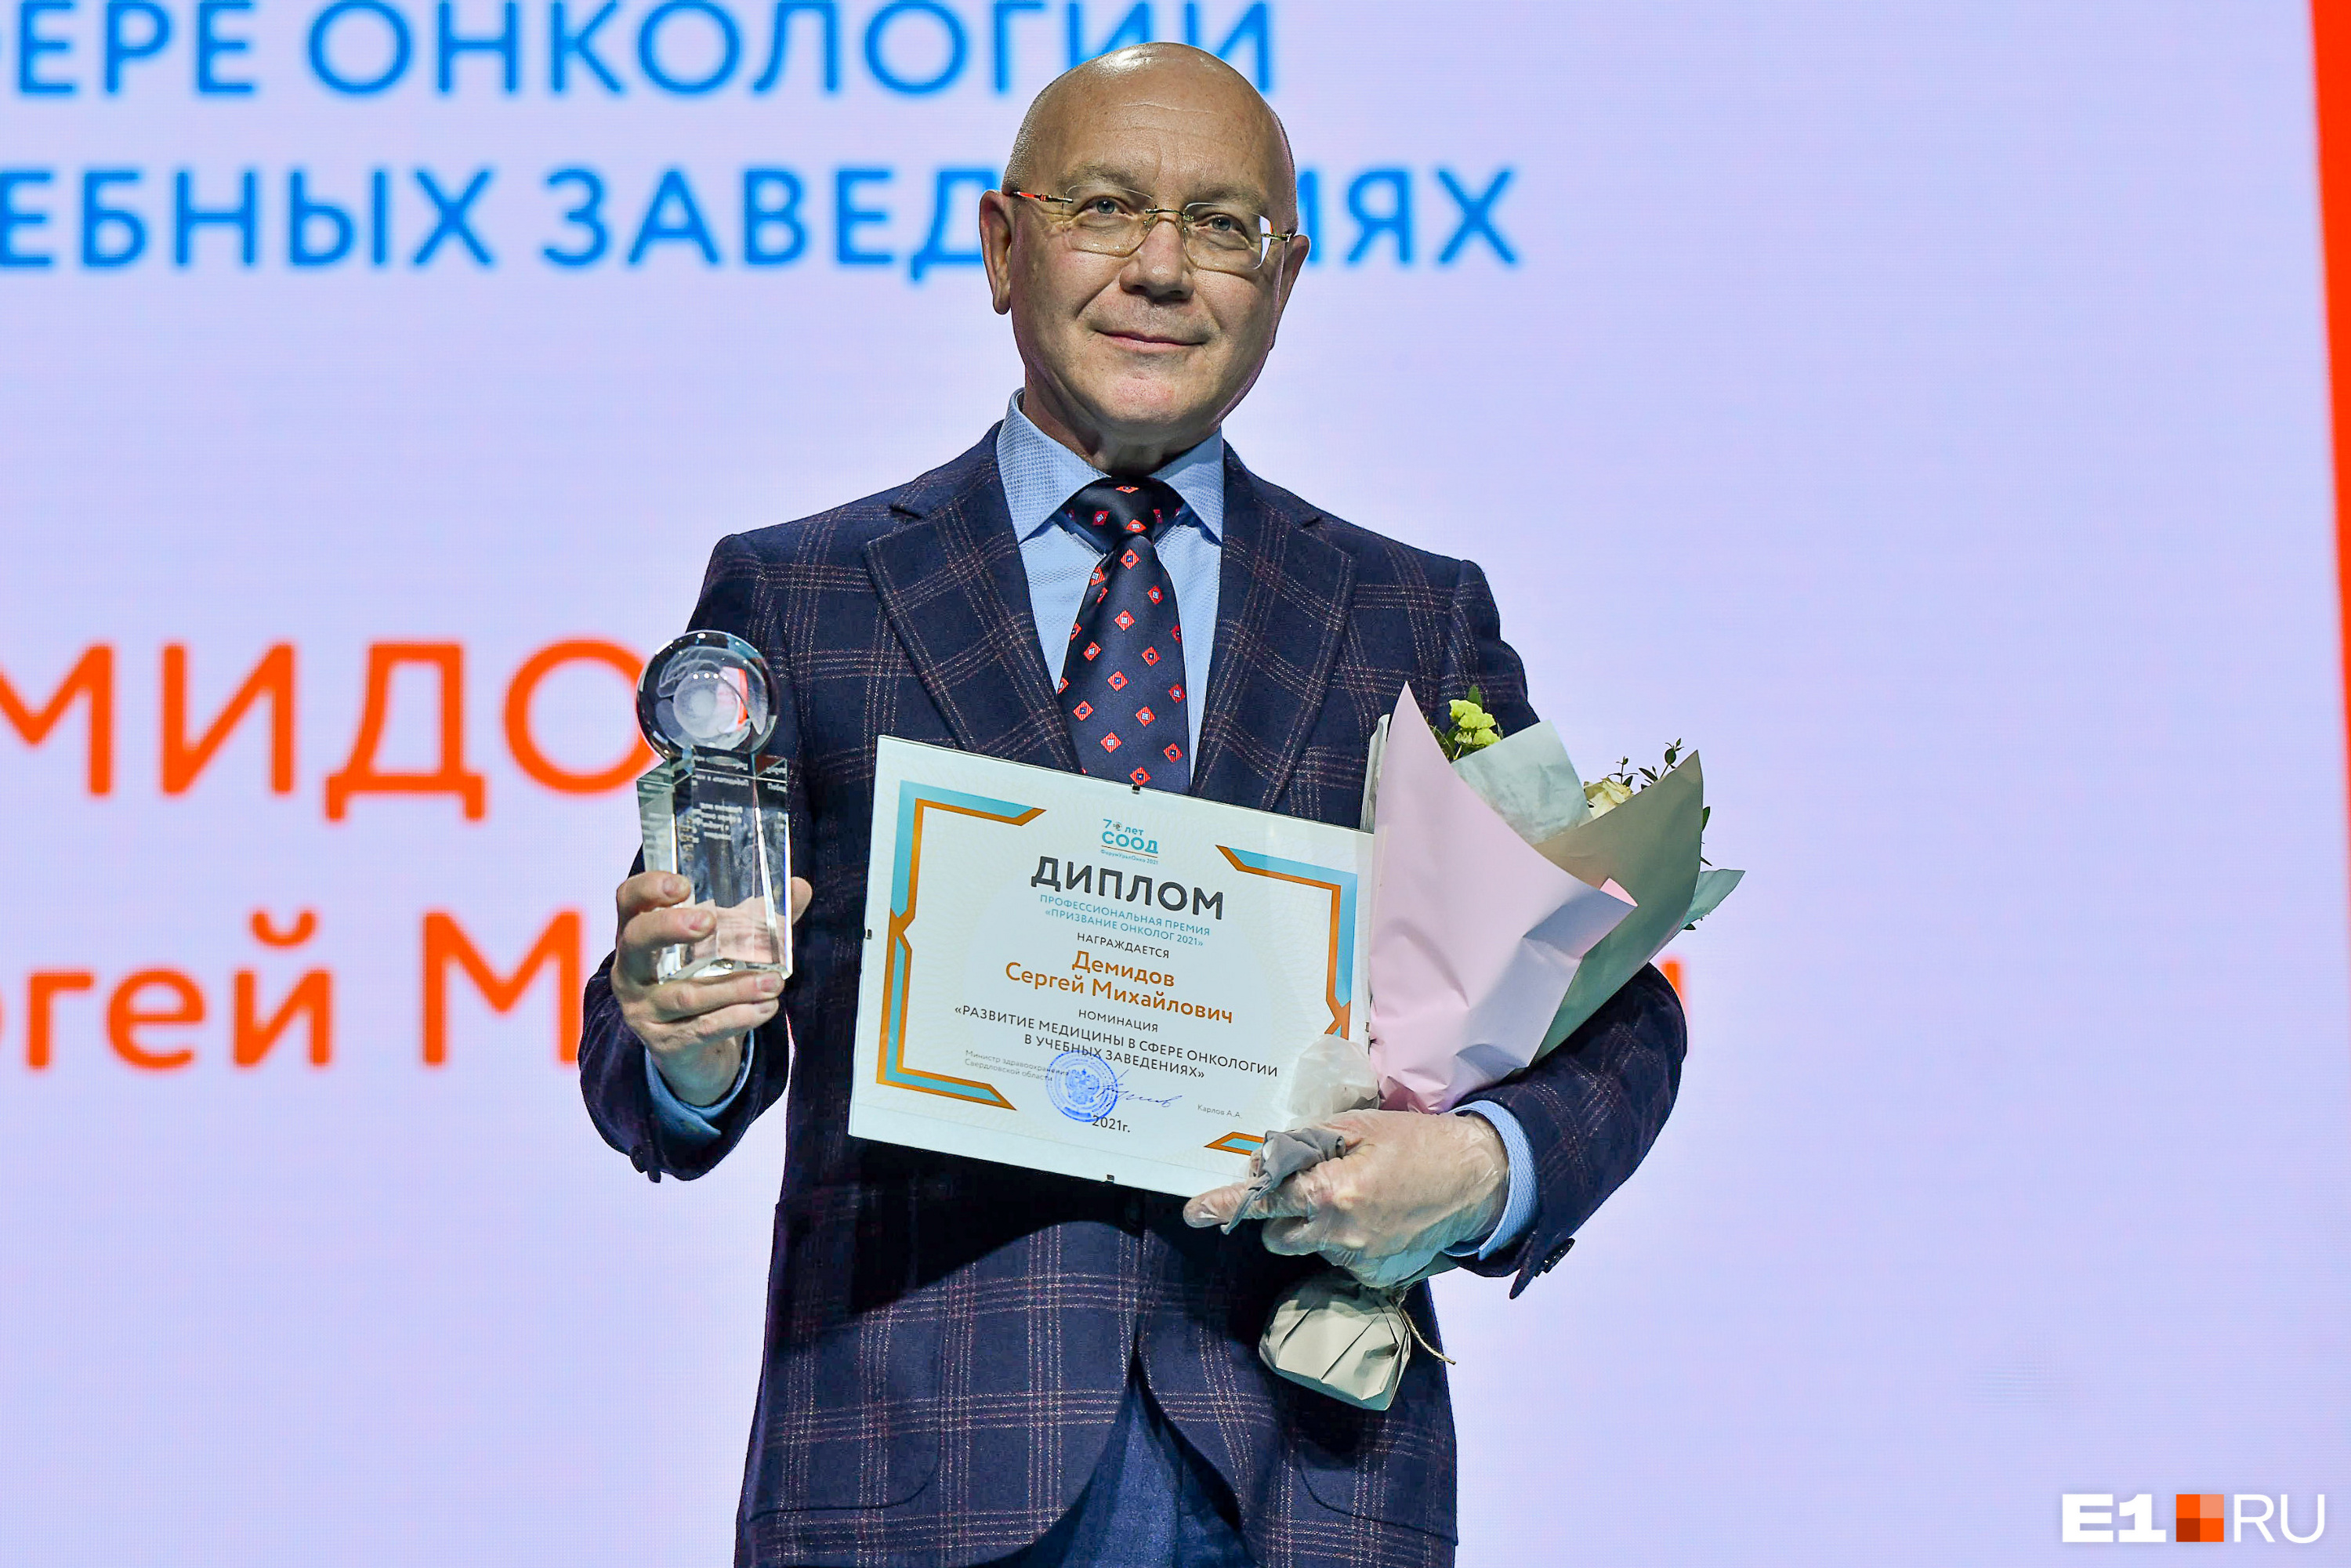 Доктор медицинских наук Сергей Демидов тоже стал победителем. Он разработал программы маммологического скрининга и ранней диагностики опухолей молочной железы